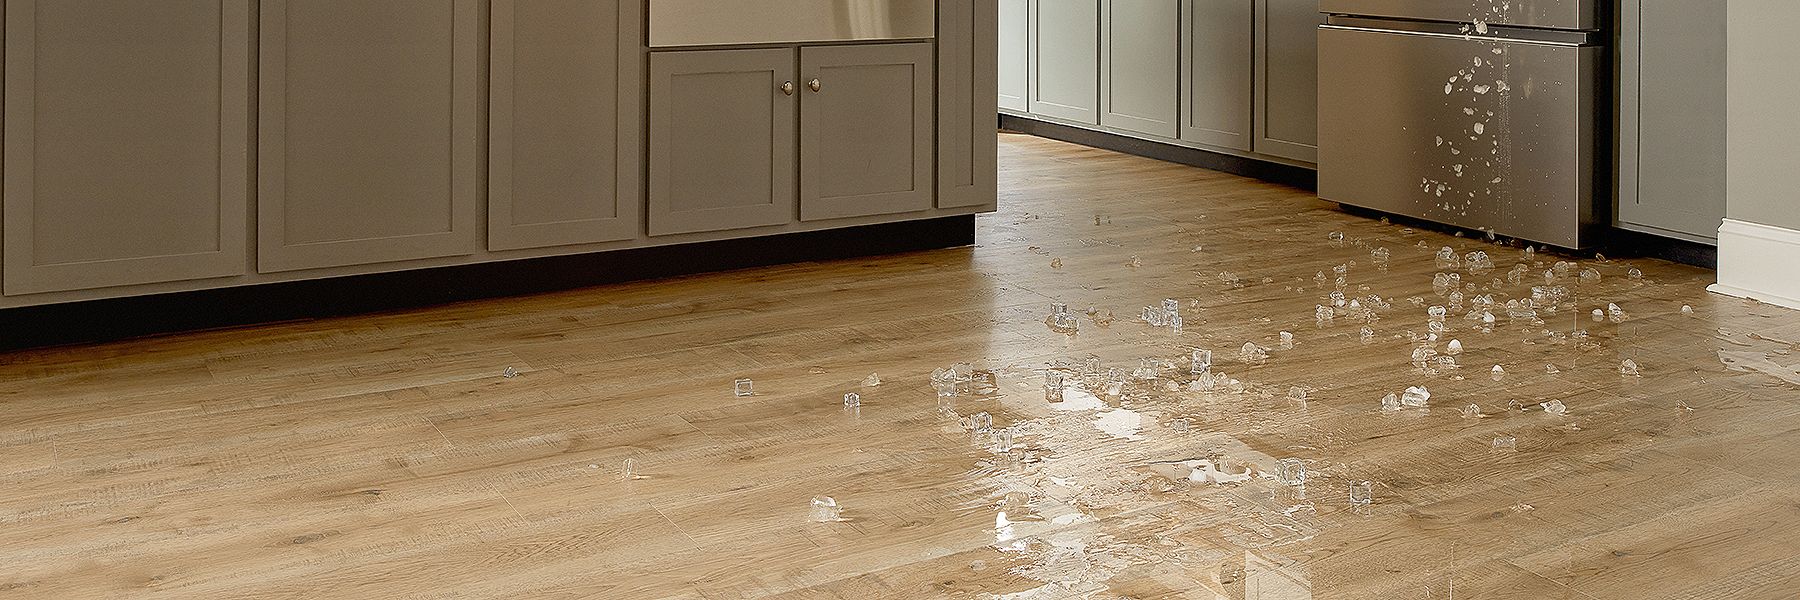 Waterproof flooring for kitchen